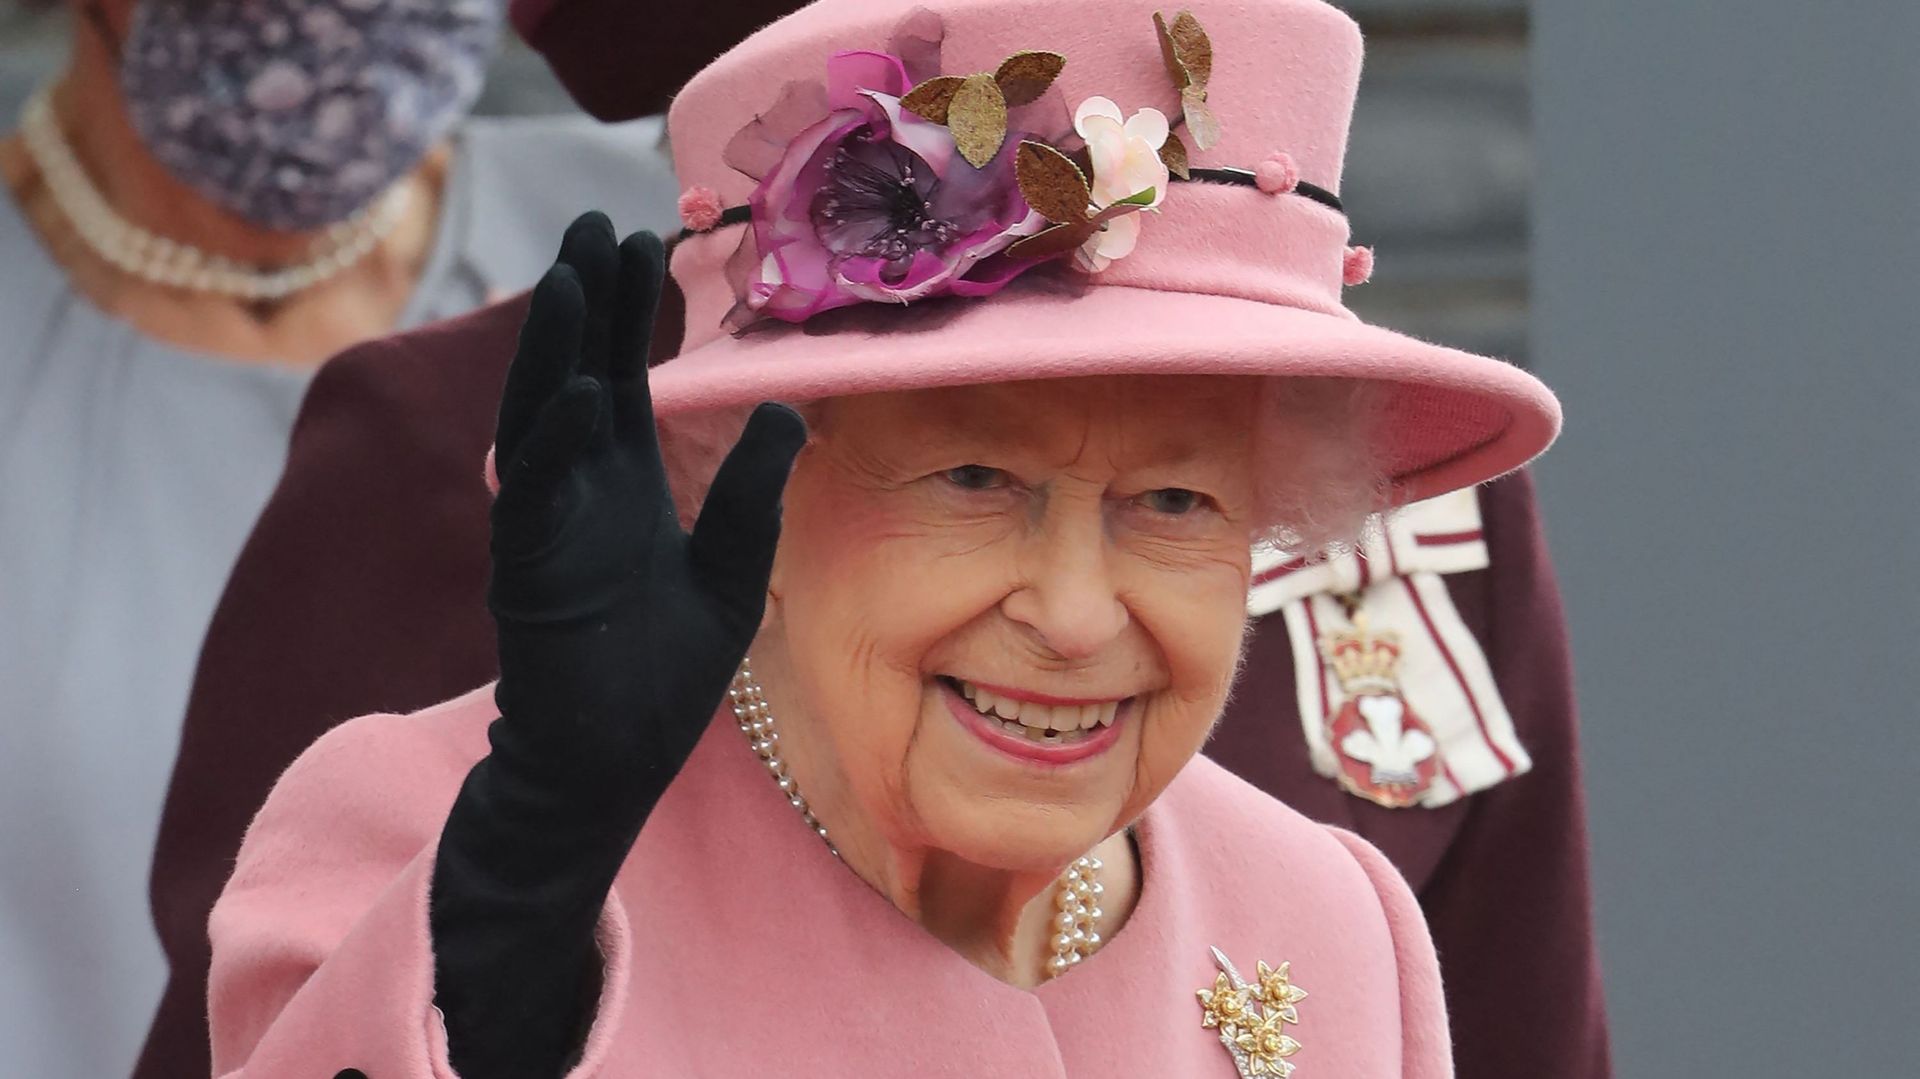 La reine Elizabeth II a passé la nuit de mercredi à jeudi à l'hôpital, a annoncé le palais